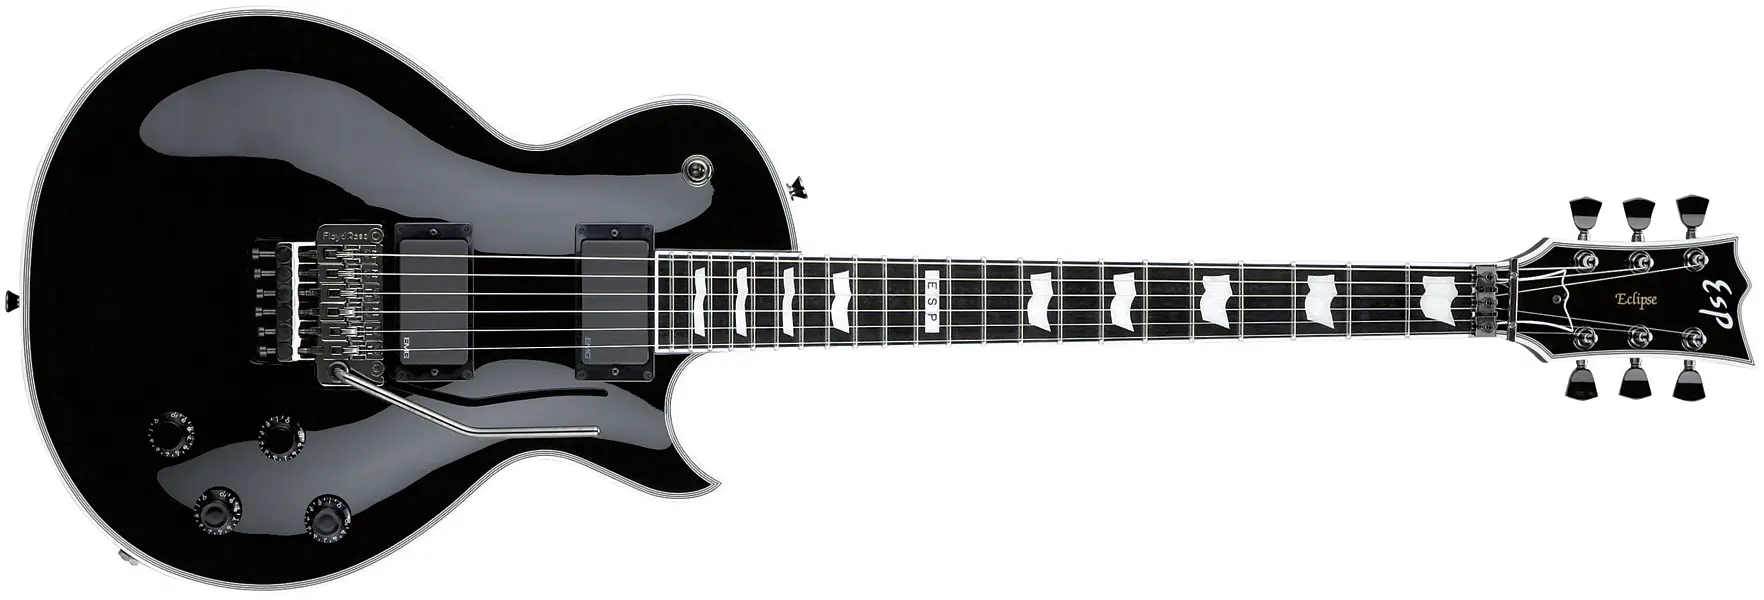 guitarra electrica de acrilico ventajas - Qué debo tener en cuenta para comprar una guitarra eléctrica